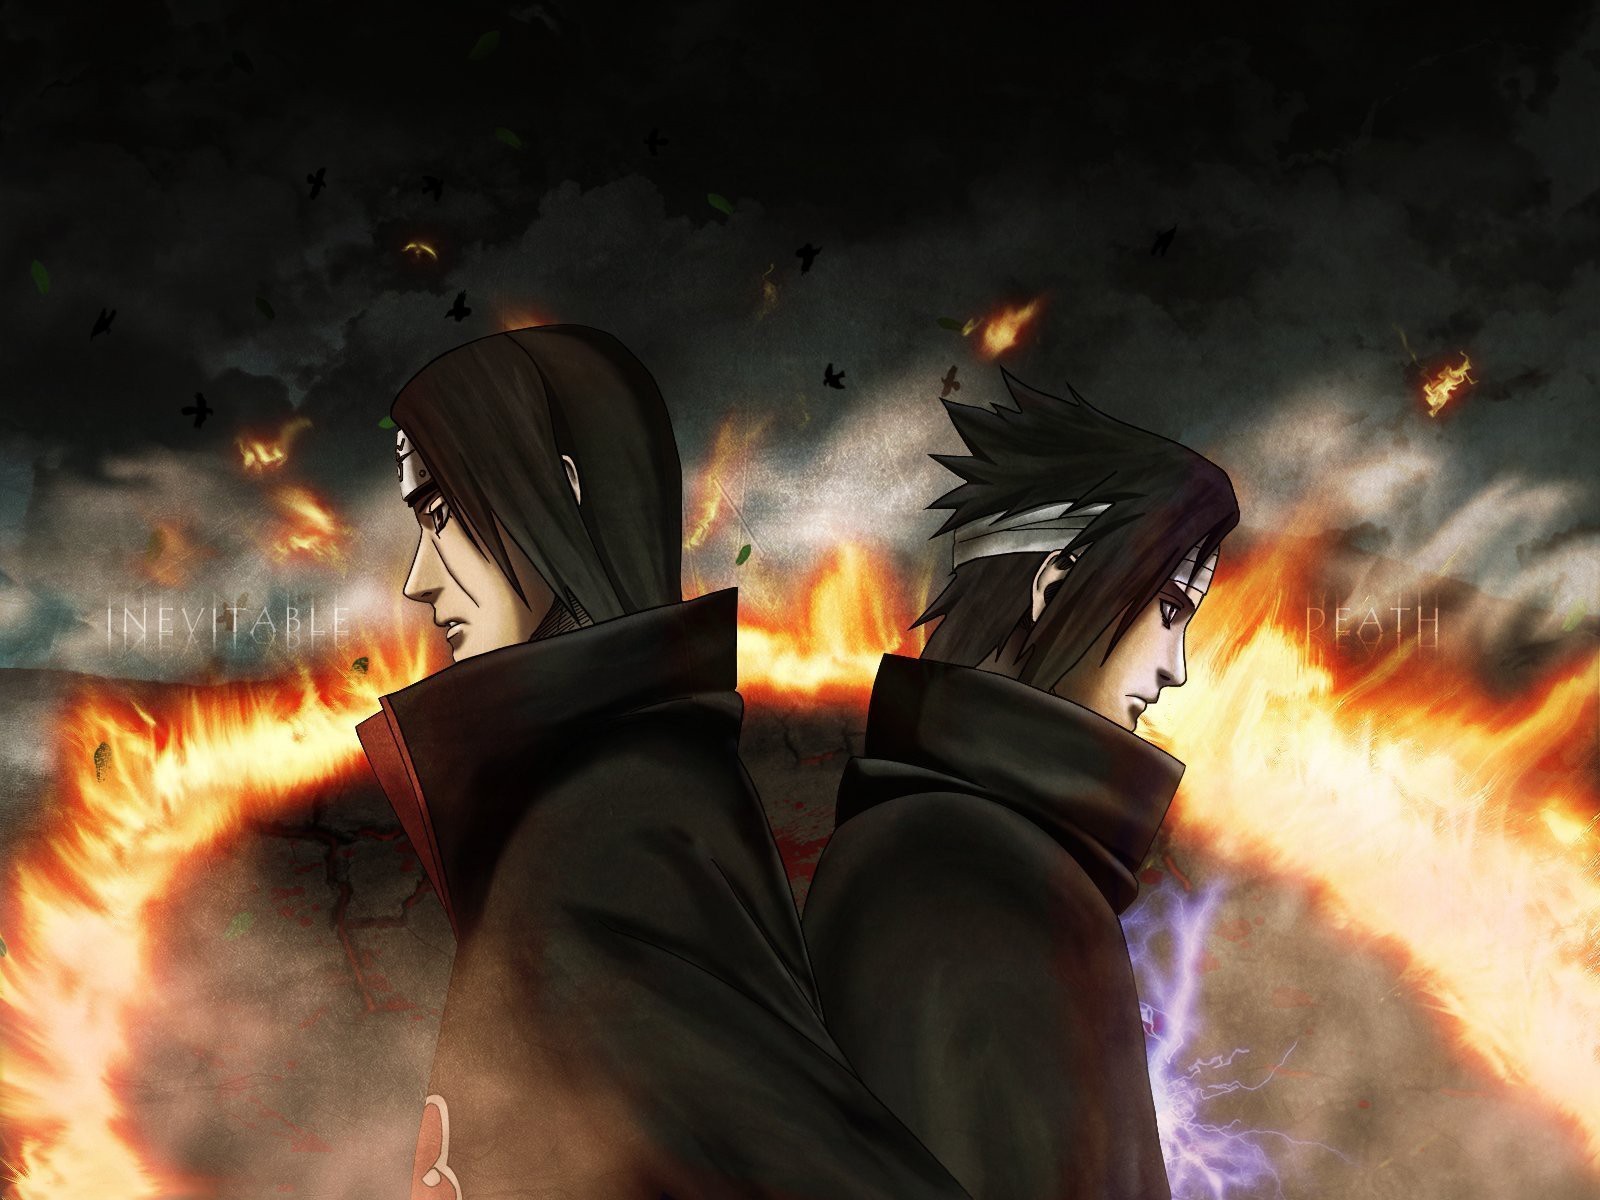 Anime 1600x1200 Uchiha Sasuke Uchiha Itachi Naruto Shippuden fire brothers anime